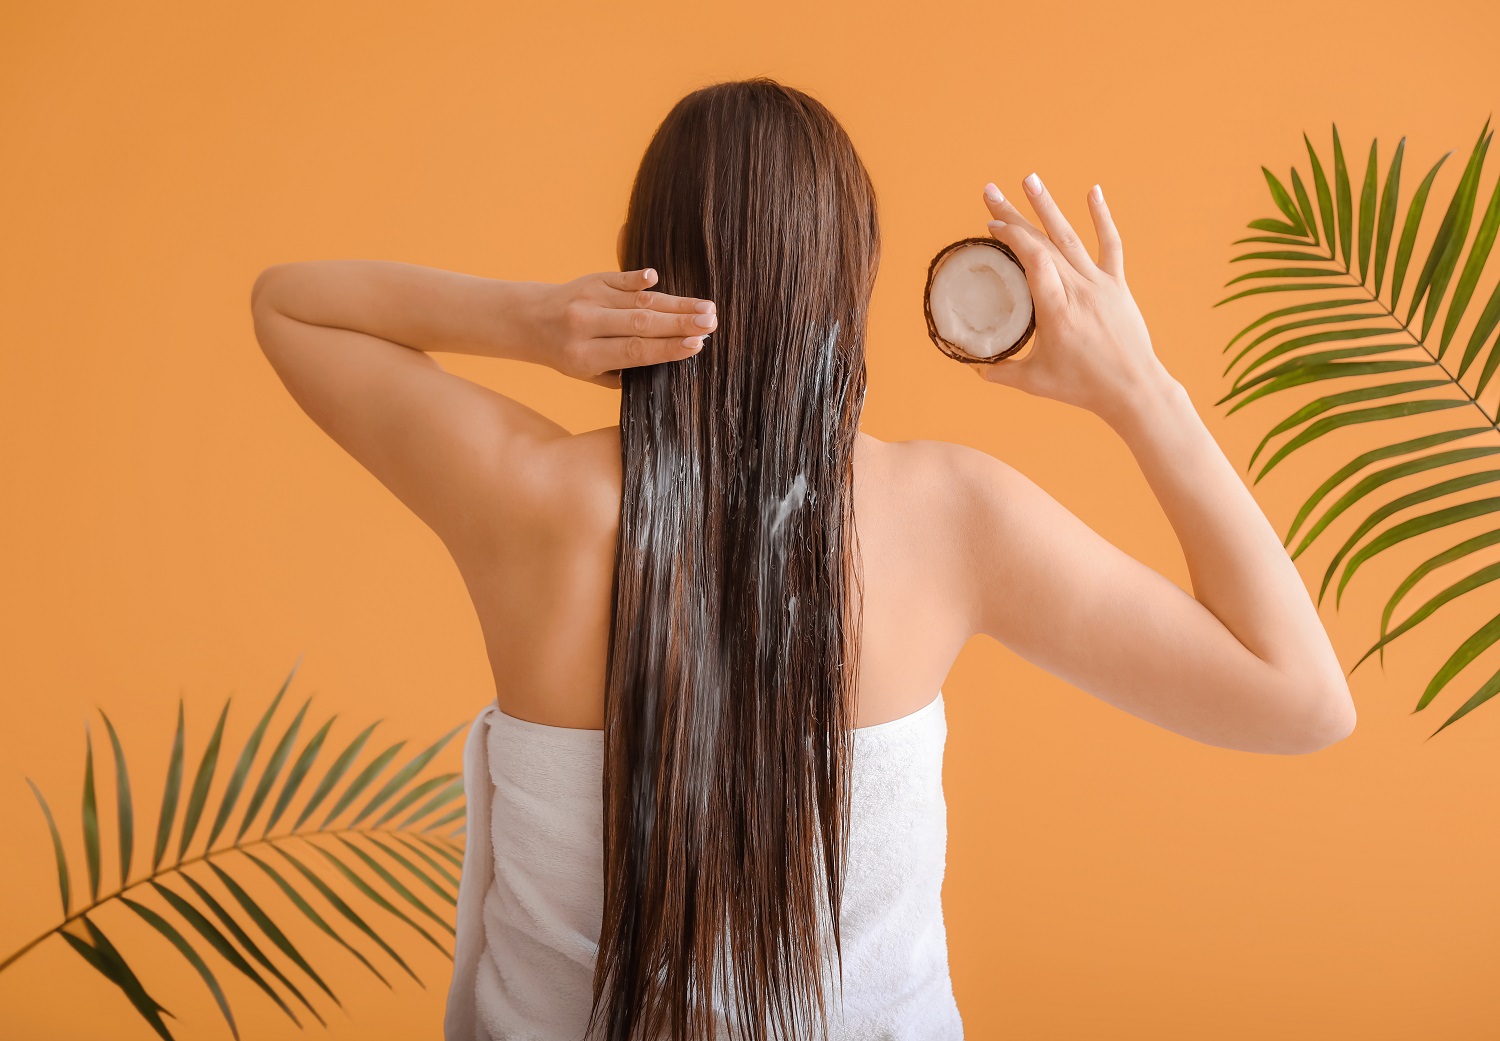 شامبو نازكا بمكونات طبيعية لتغذية الشعر